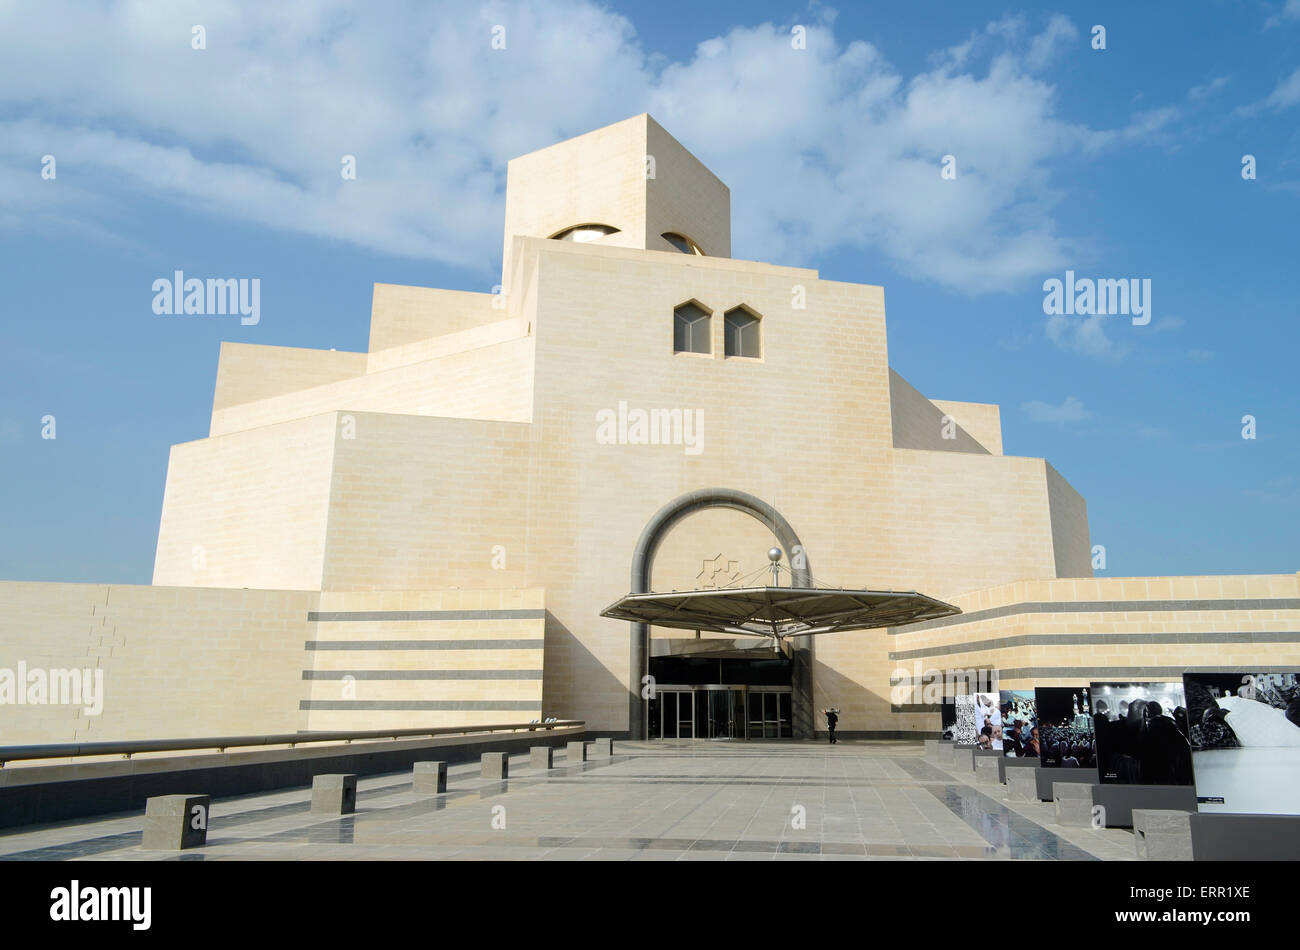 La moderna arquitectura del Museo de Arte Islámico (MIA) en el centro de la ciudad de Doha, capital de Qatar. Foto de stock